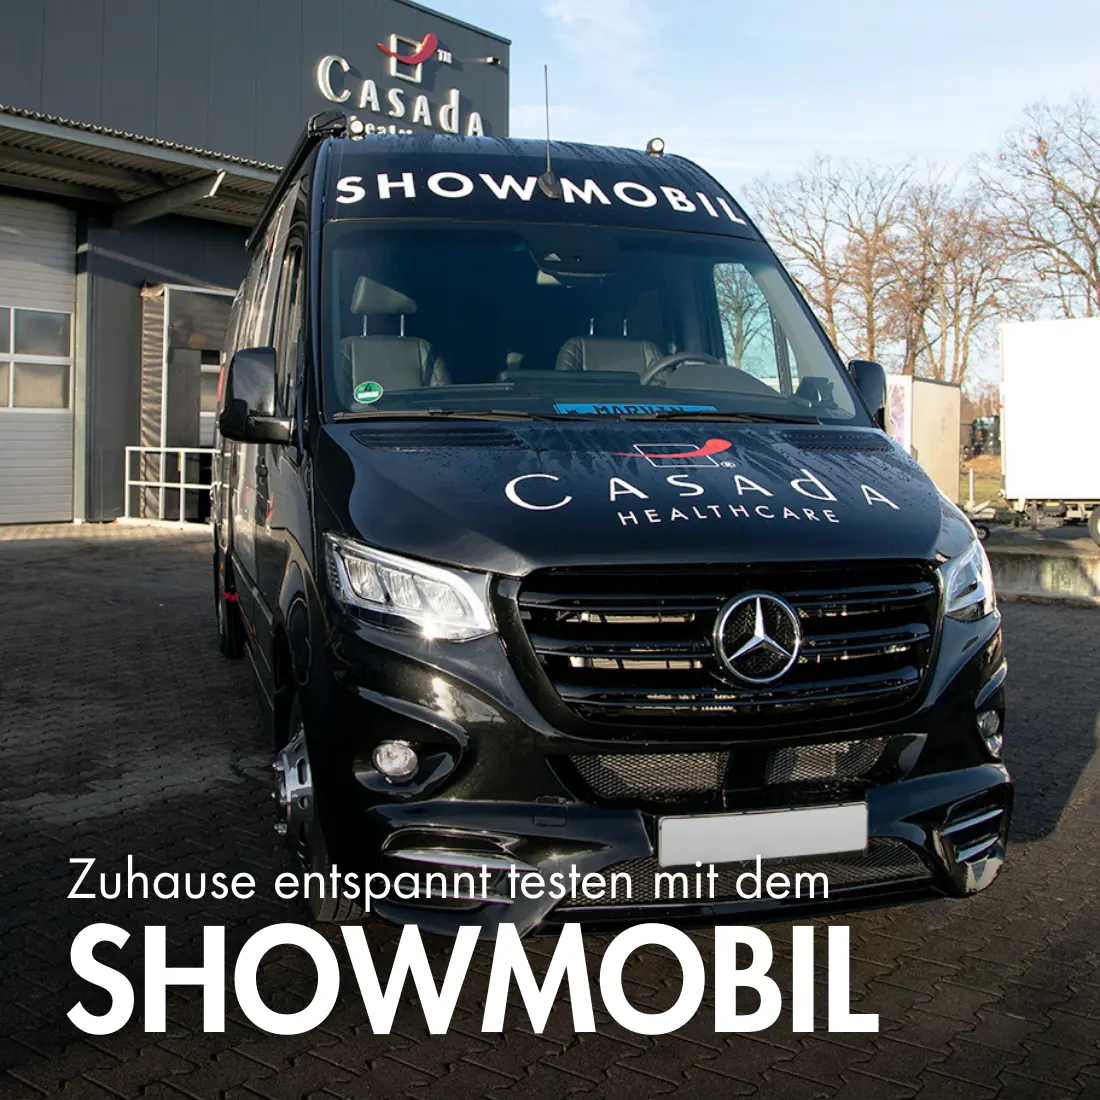 casada-showmobile-de-mobile